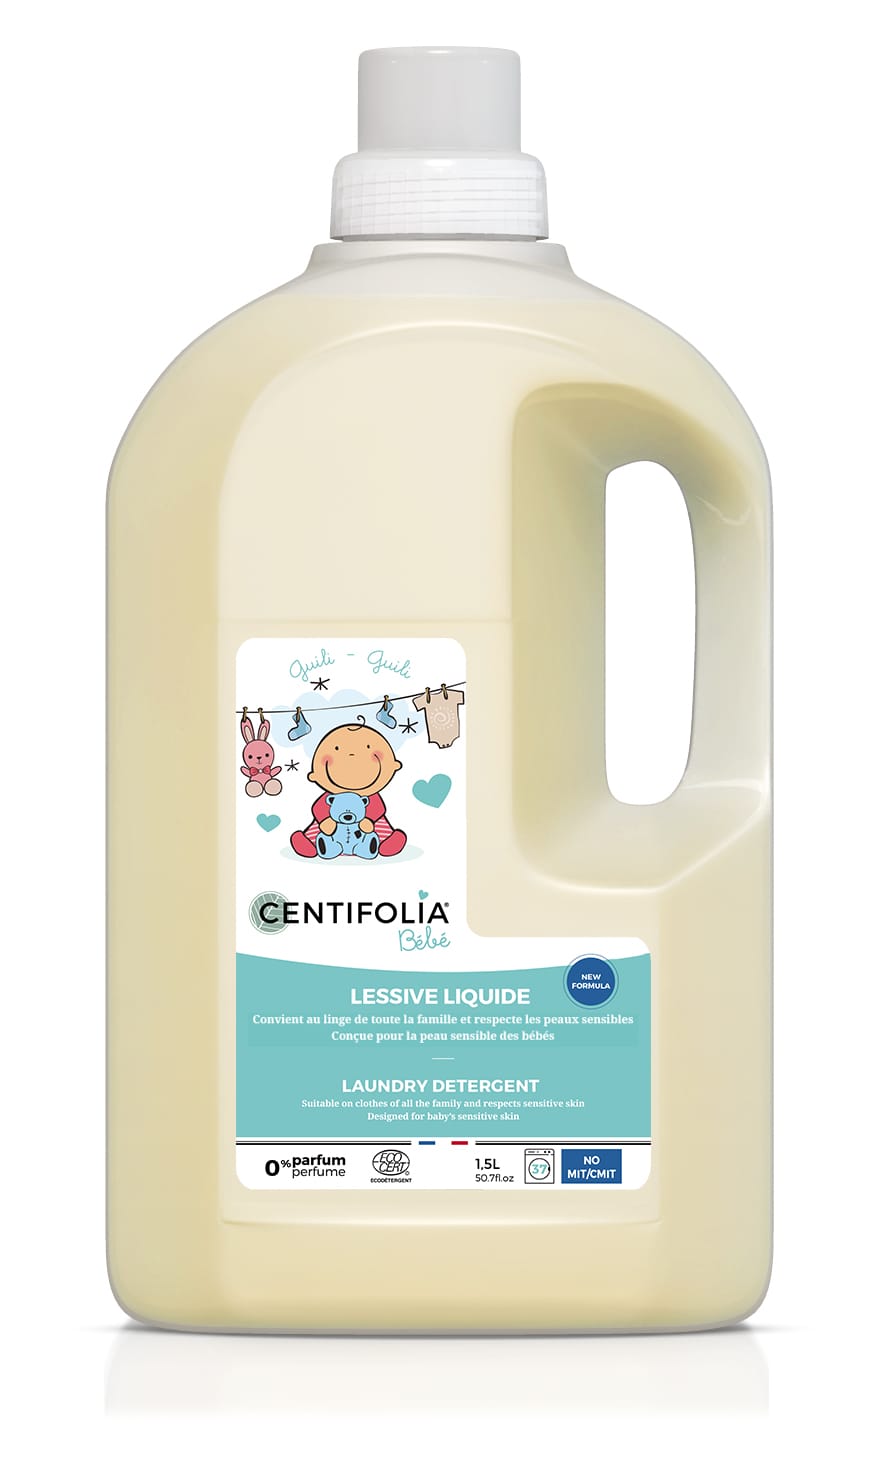 Lessive liquide au savon de marseille 1.5l